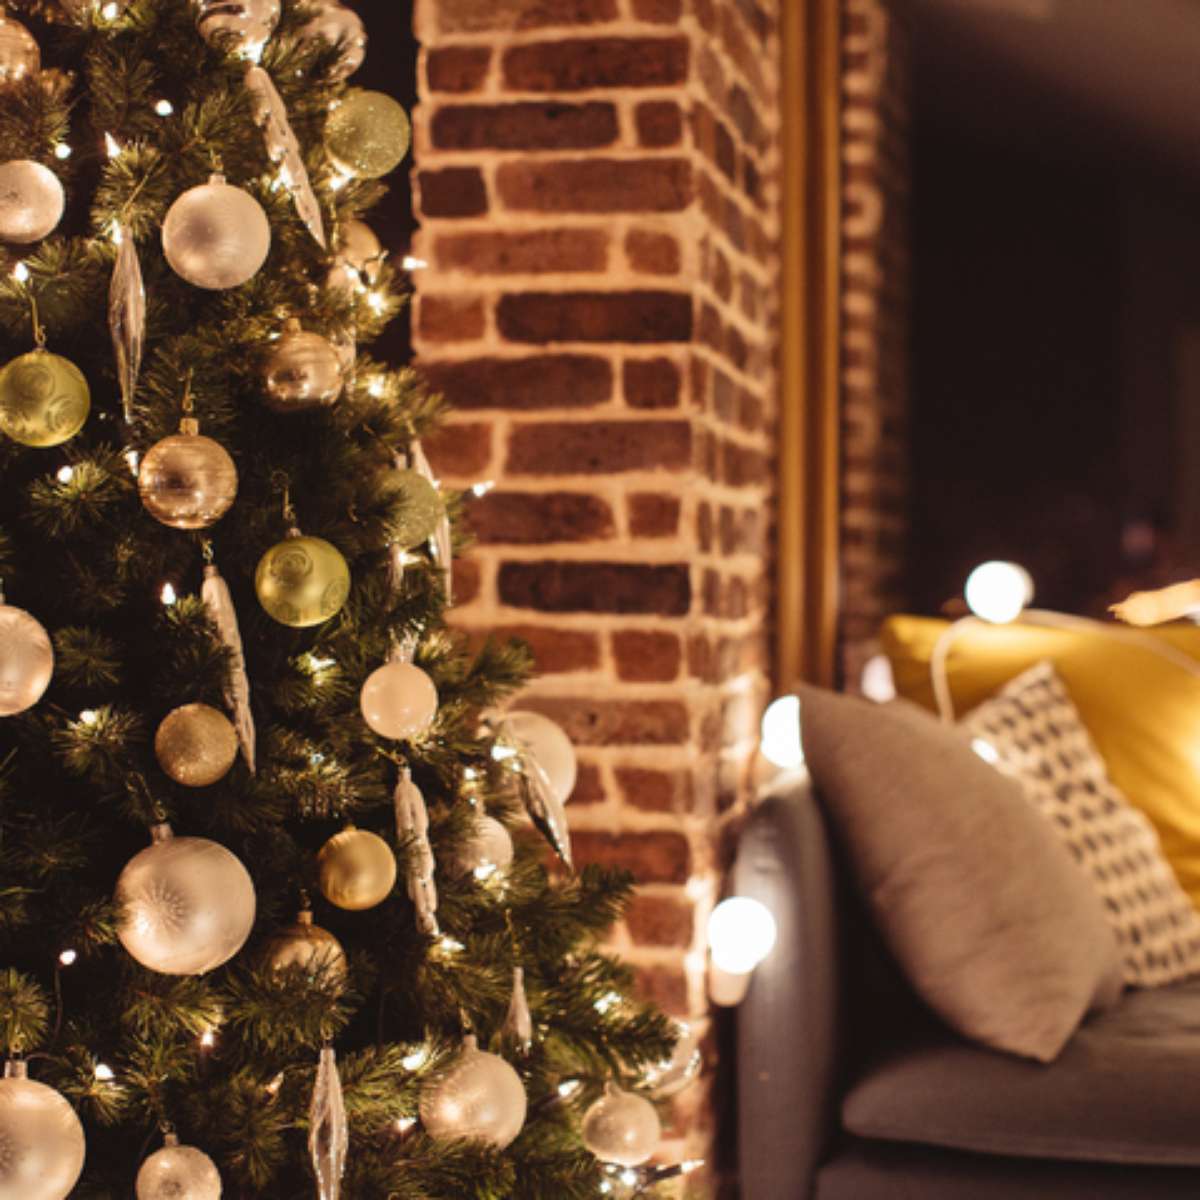 Aprenda a atrair os sonhos para 2018 com a árvore de Natal